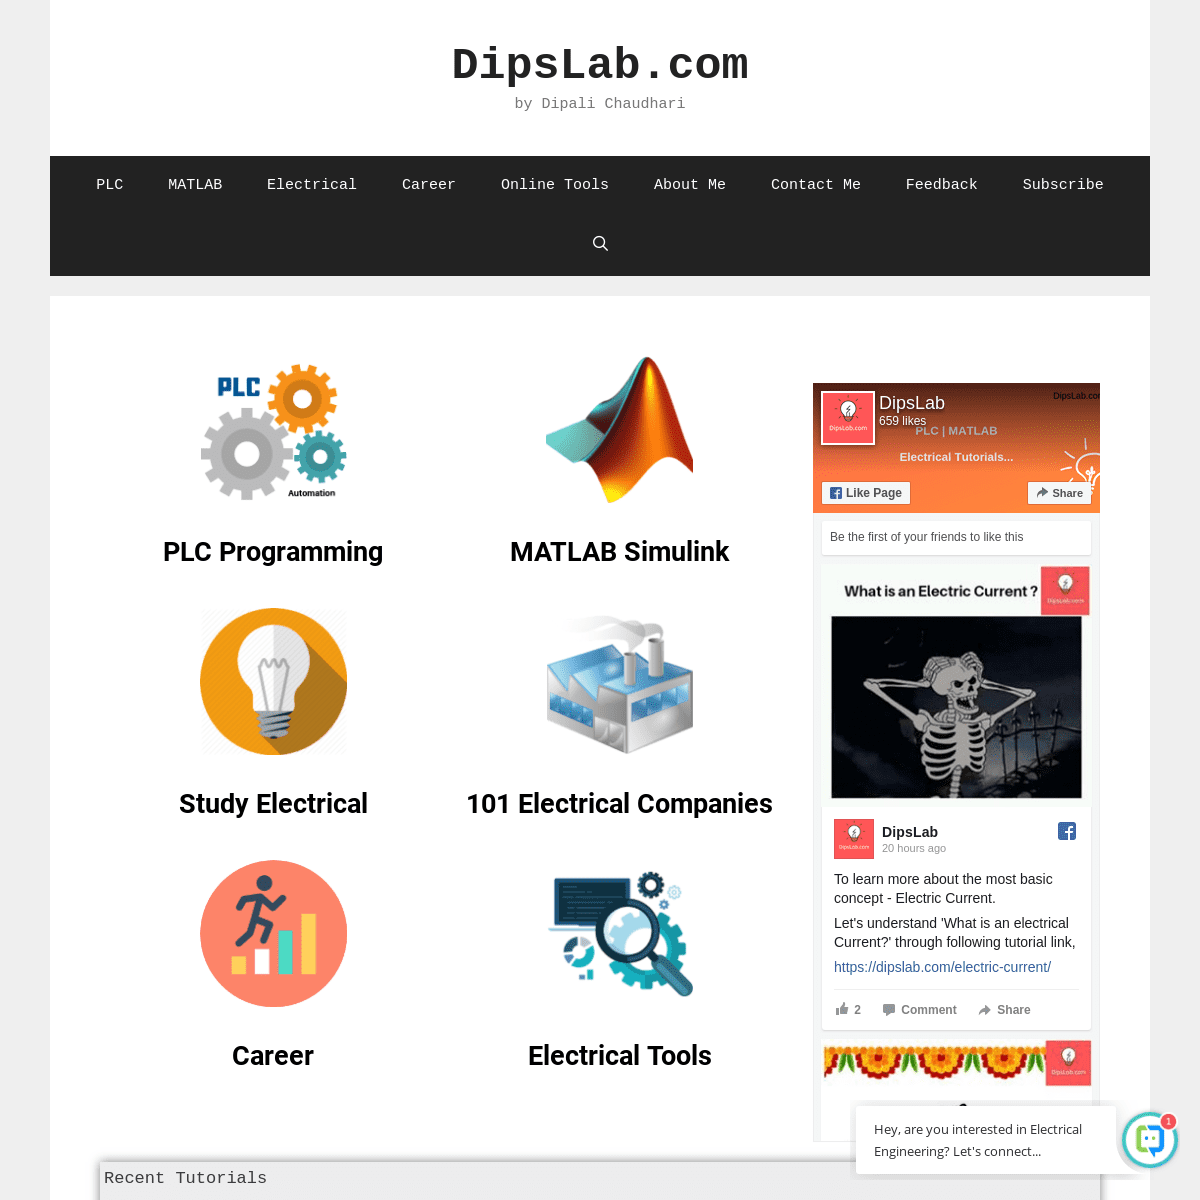 A complete backup of dipslab.com